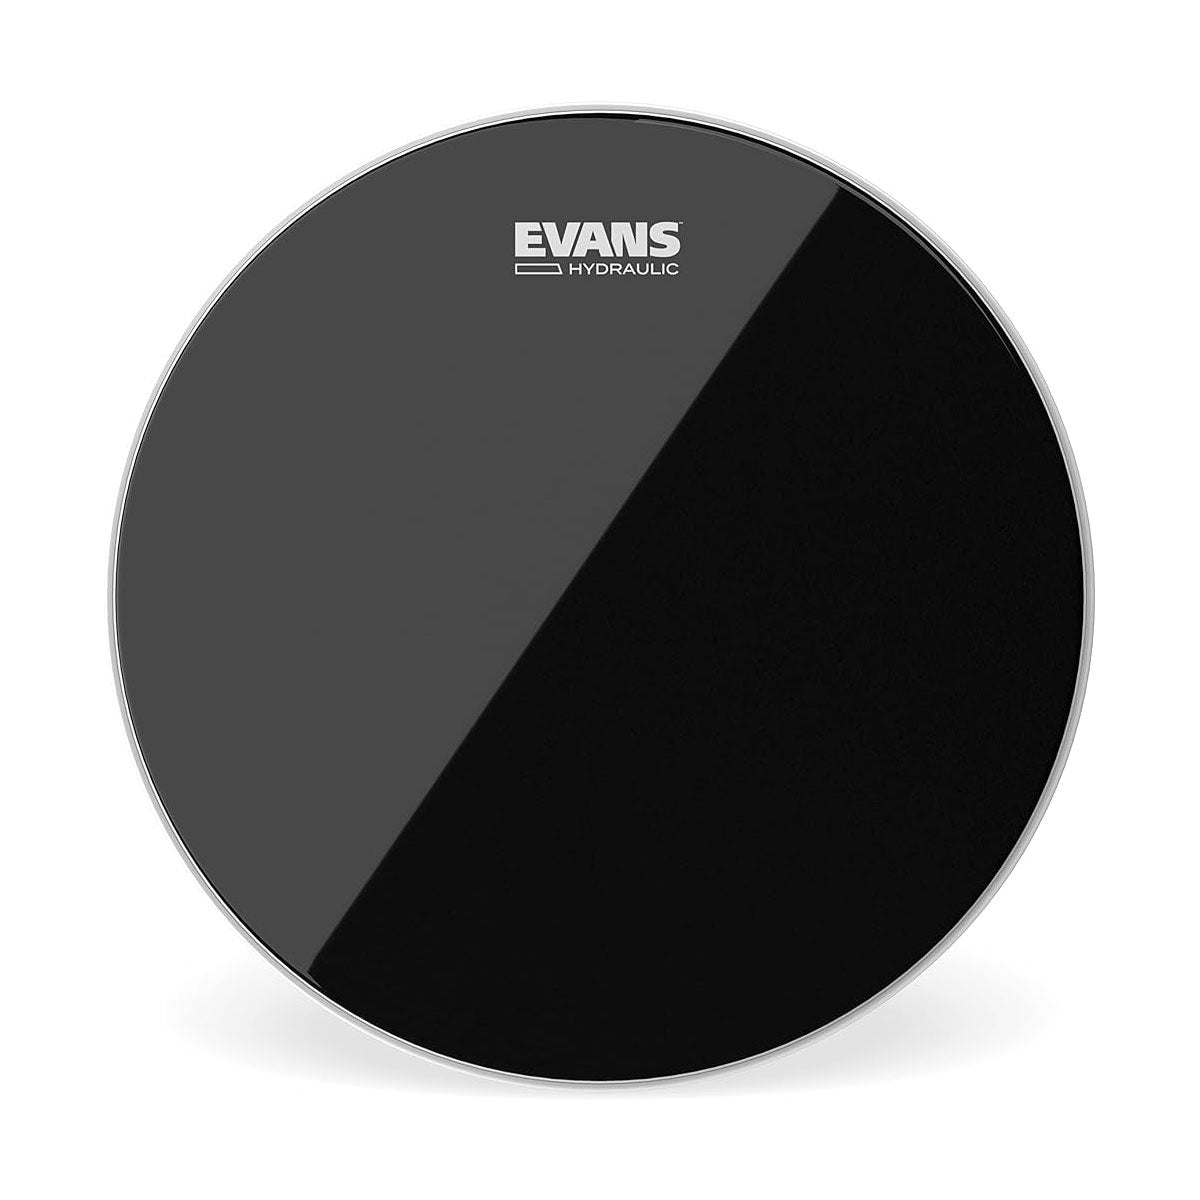 Evans TT13HBG Hydraulic Clear Black 13" Drumhead